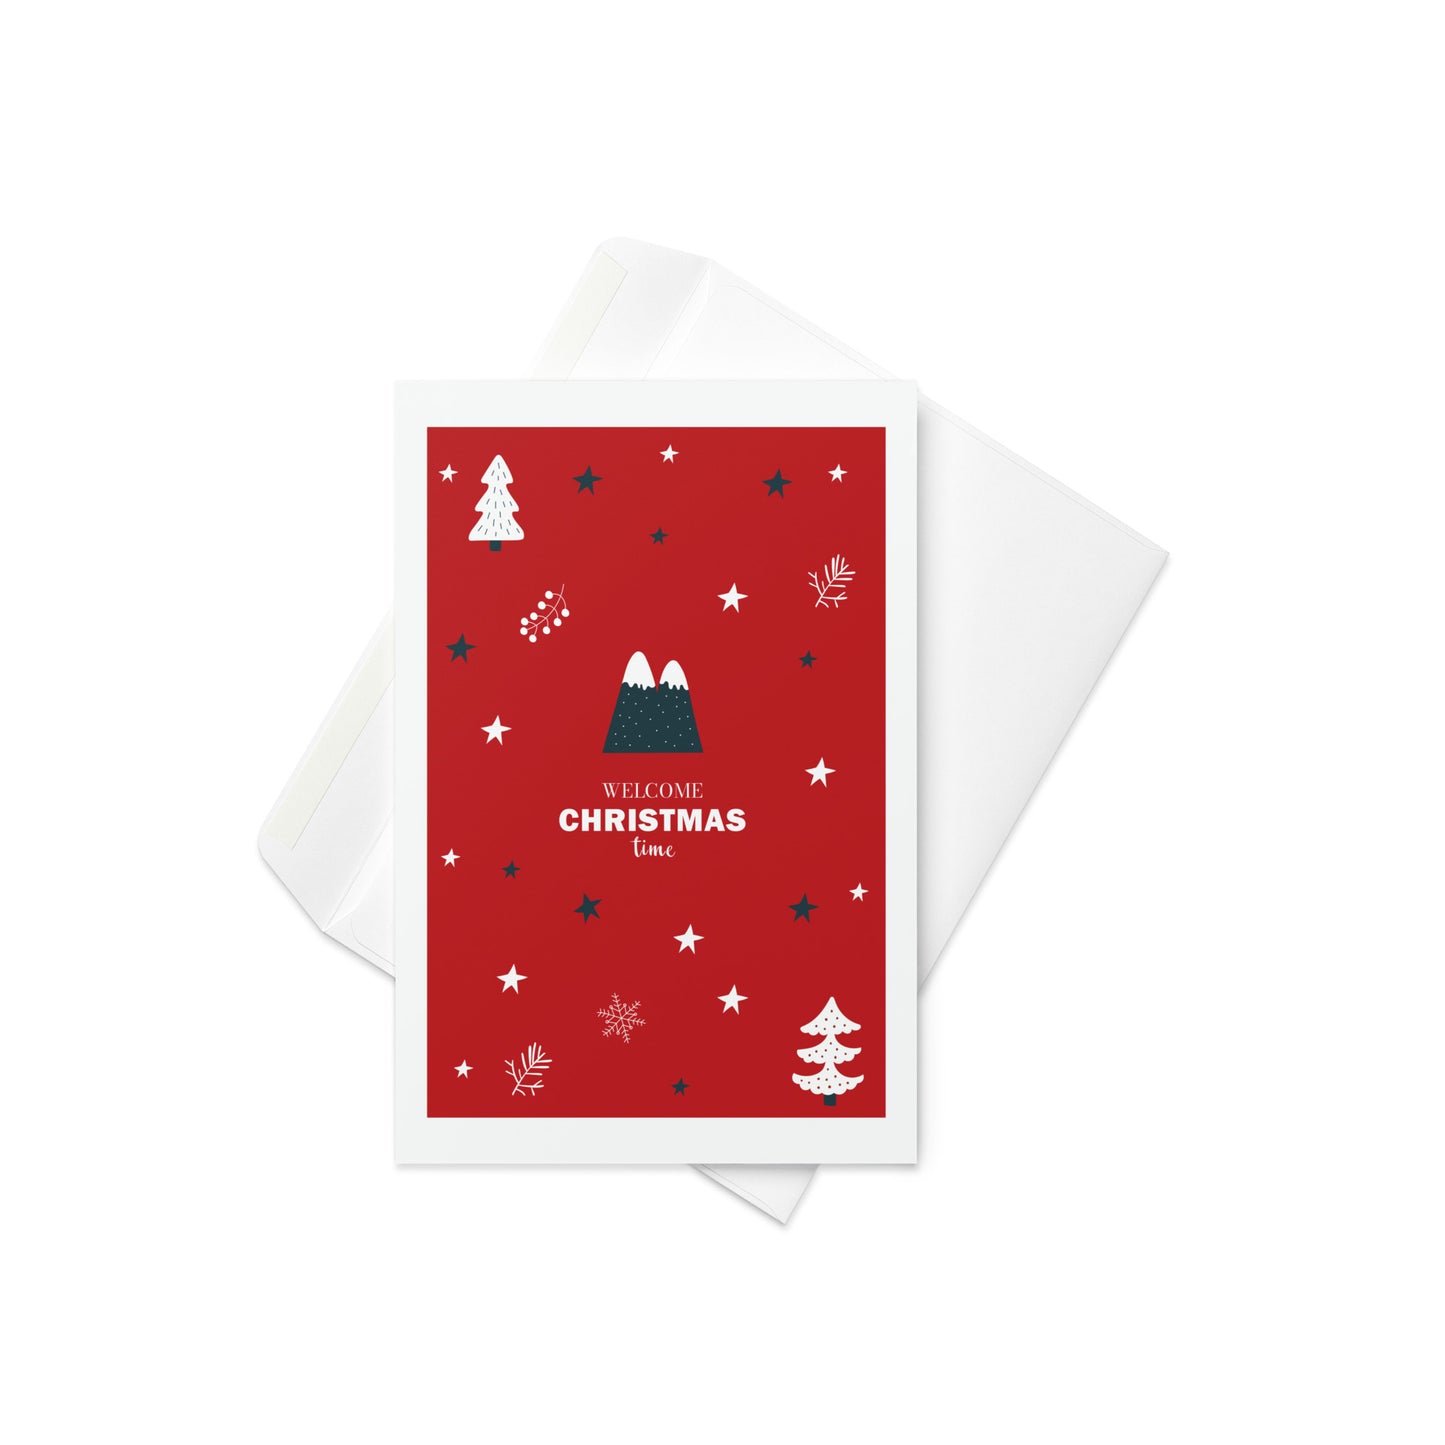 Welcome Christmas Time - Playful Christmas Greeting Card